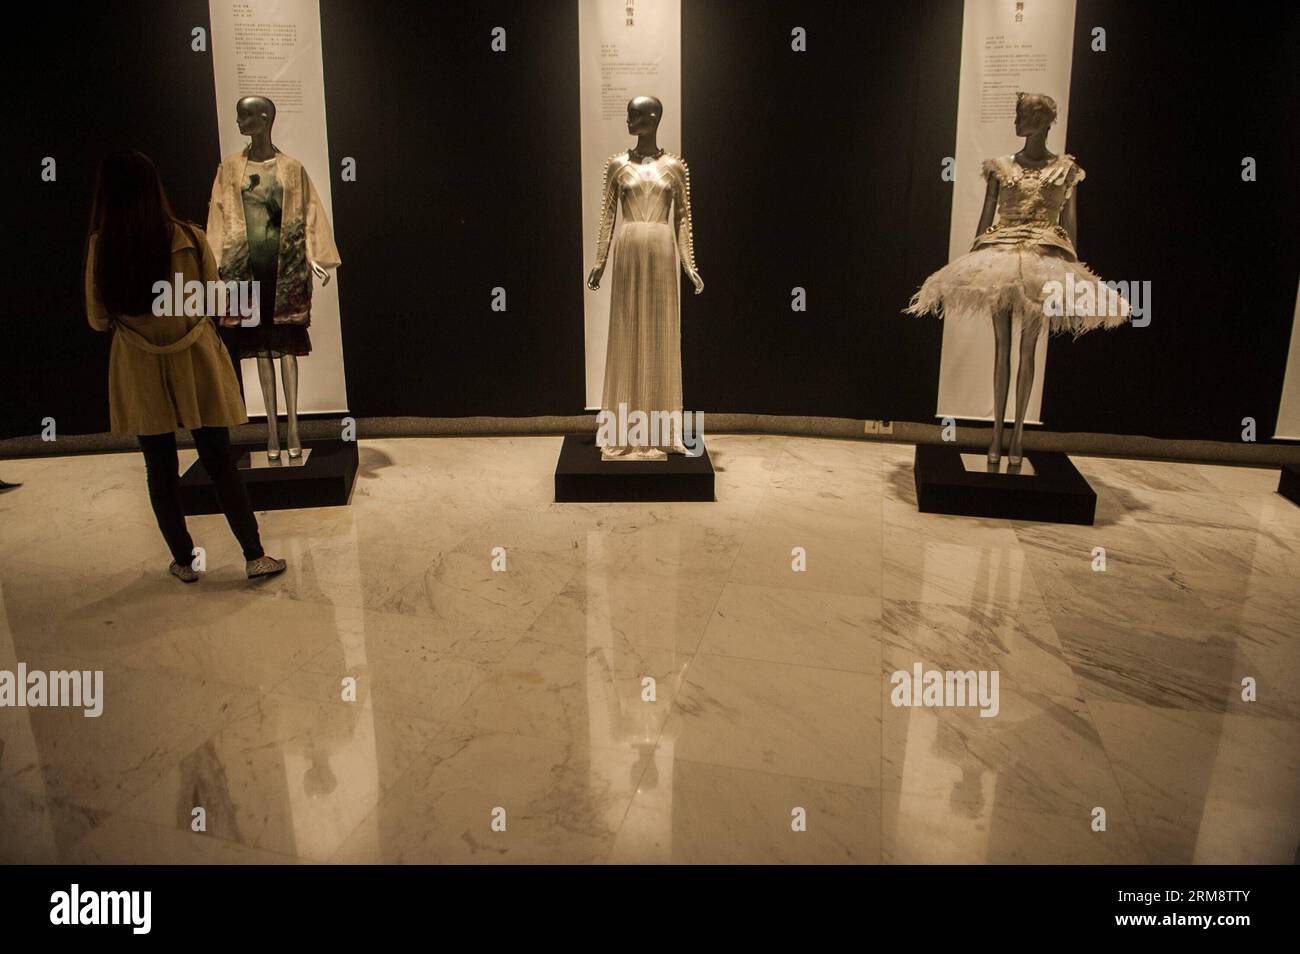 (140427) -- SHENZHEN, 26 avril 2014 (Xinhua) -- Un visiteur voit des expositions pendant la réflexion du temps - l'art de la mode en Chine 1993-2012 à Shenzhen, dans la province du Guangdong du sud de la Chine, le 26 avril 2014. L'exposition, qui présente plus de 100 œuvres créatives de la mode créées par 70 designers chinois au cours des 20 dernières années, est consacrée à présenter le développement global du design de mode chinois et les concepts créatifs. (Xinhua/Mao Siqian)(wyo) CHINA-SHENZHEN-EXHIBITION-ART OF FASHION (CN) PUBLICATIONxNOTxINxCHN Shenzhen avril 26 2014 XINHUA a Visitor Views EXHIBITIONS pendant la réflexion Banque D'Images